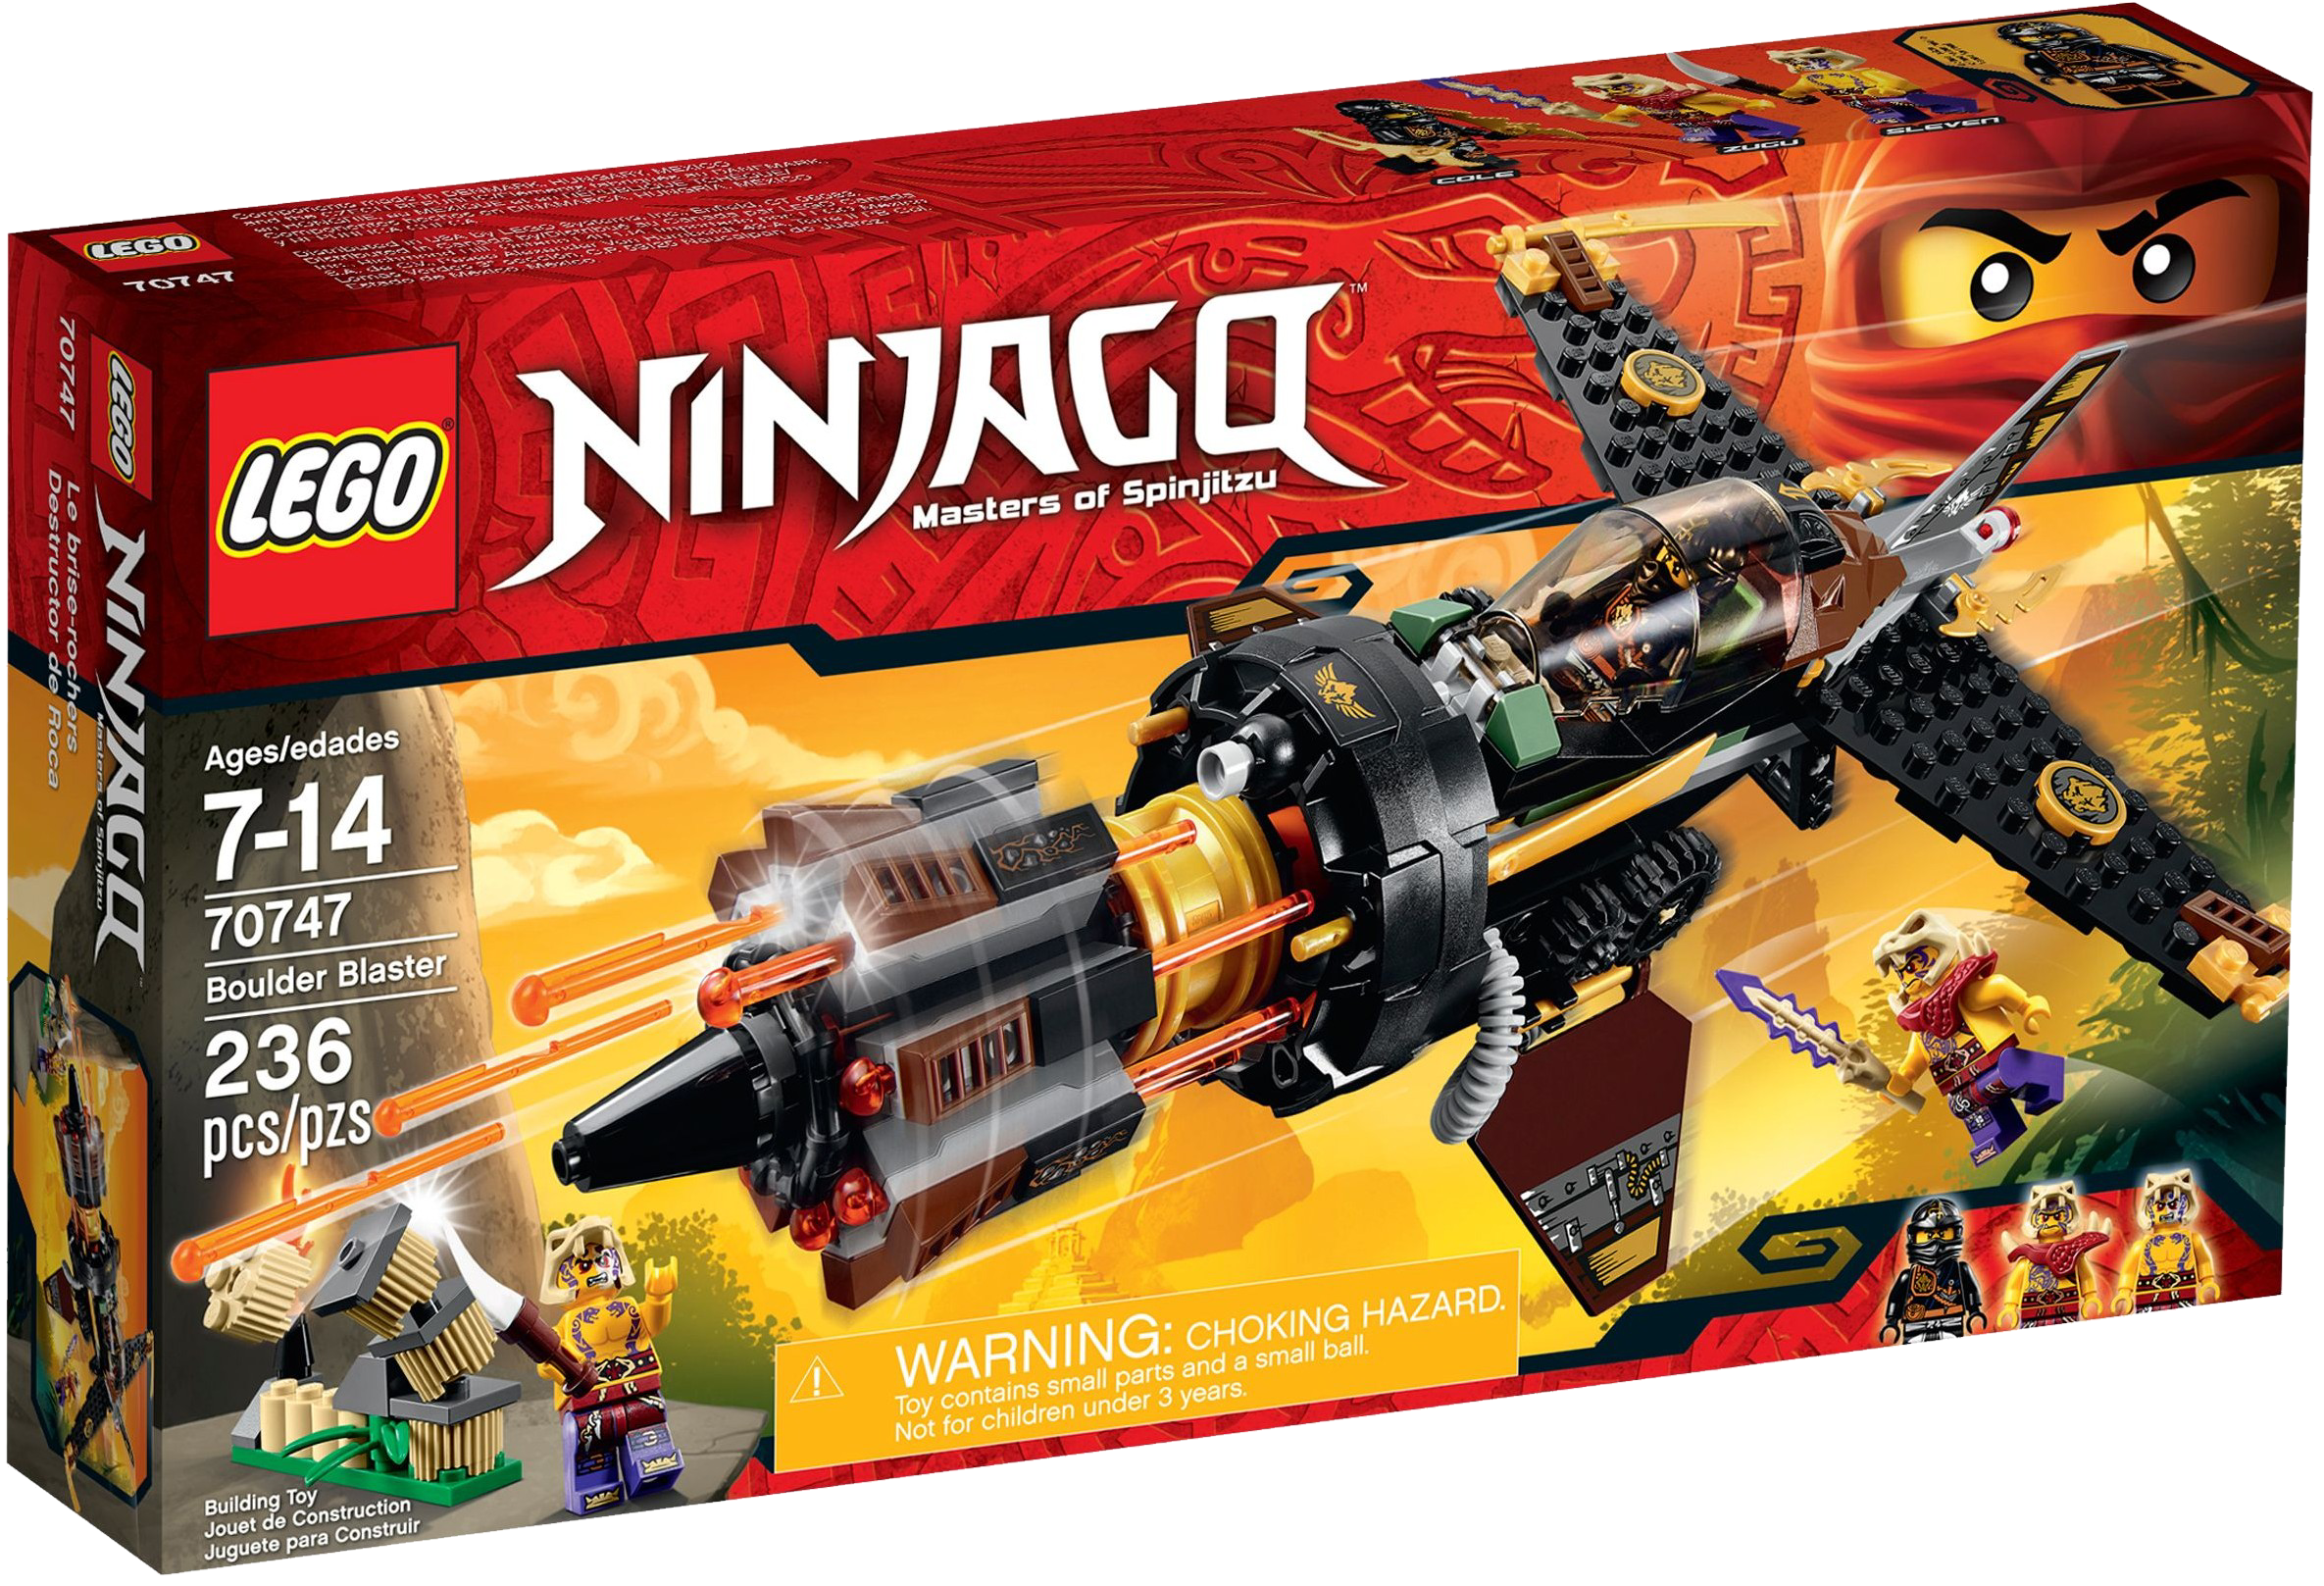 lego ninjago season 4 all sets